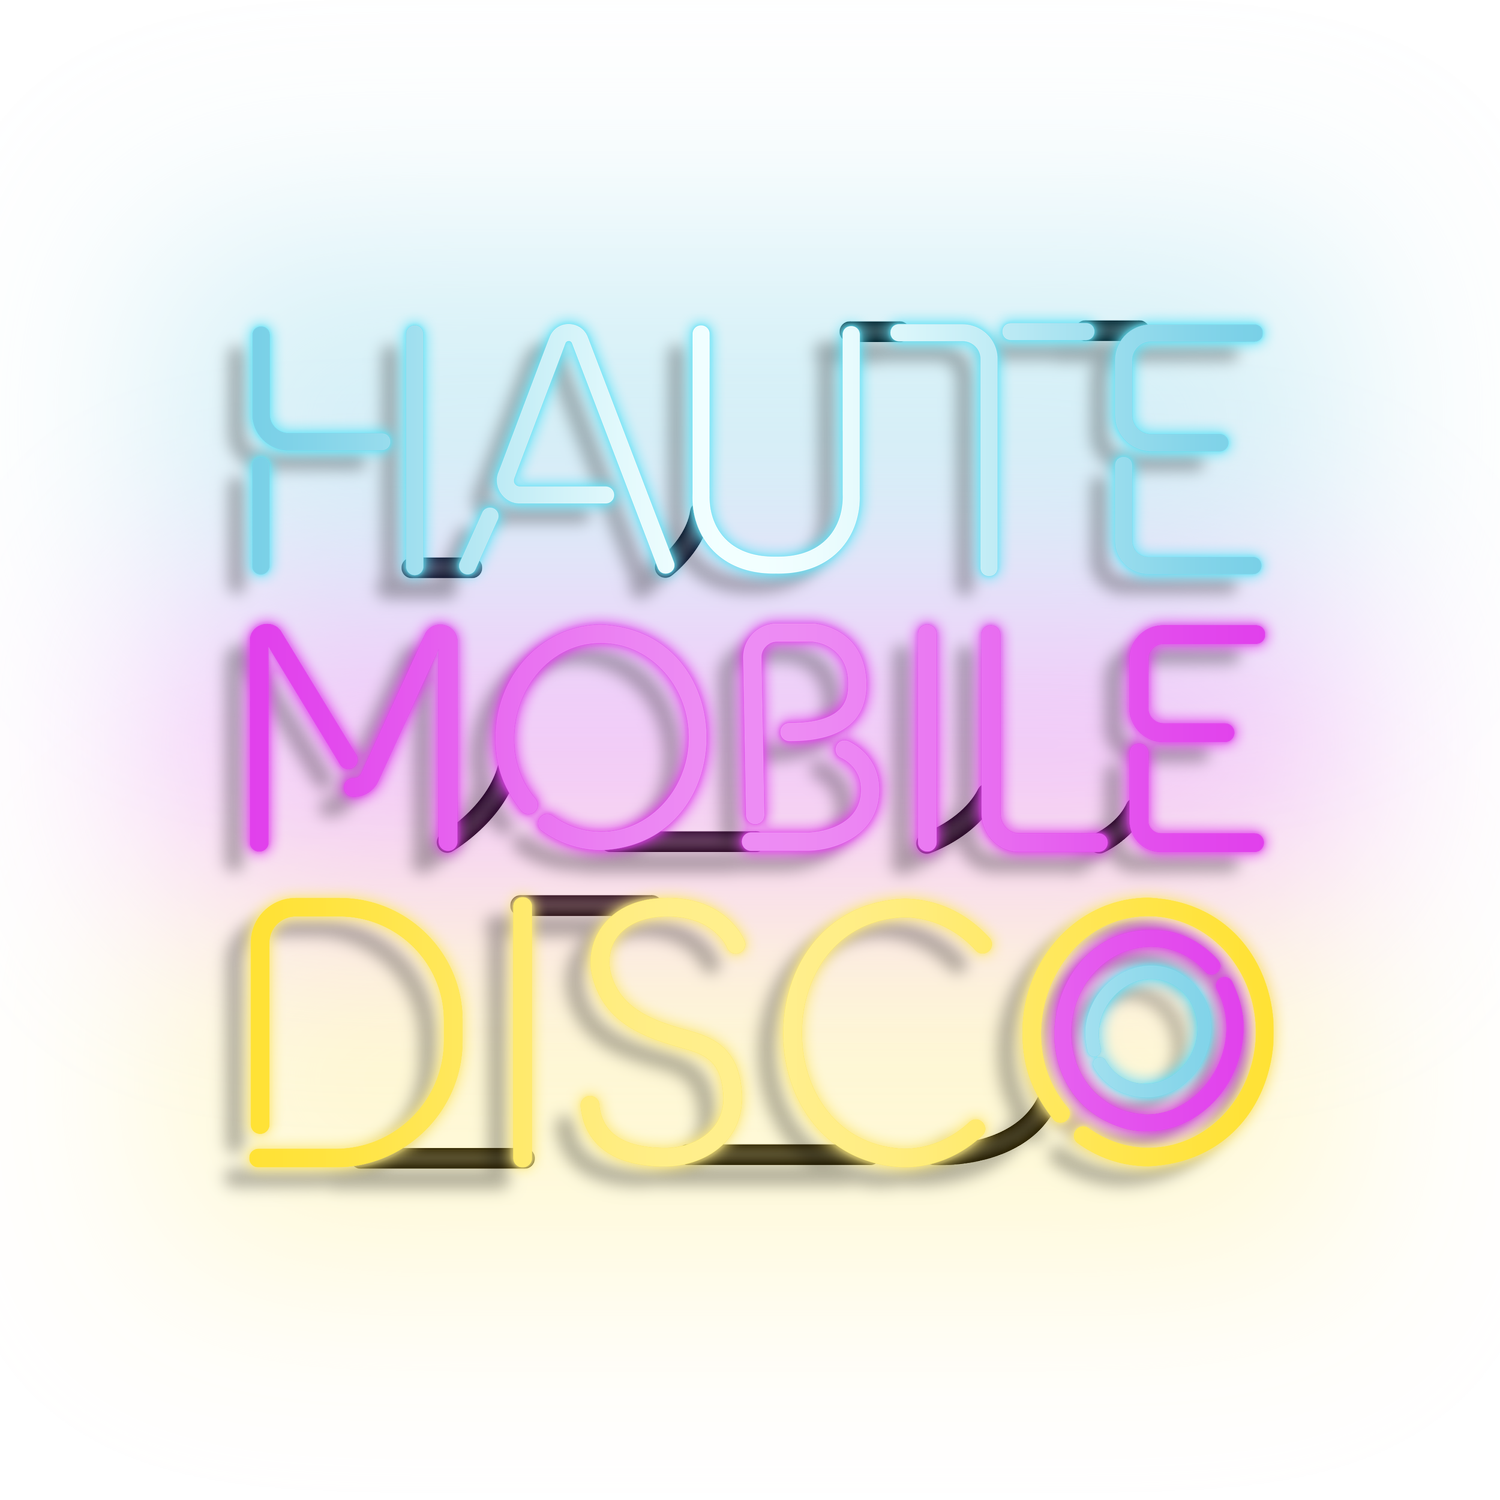 Haute Mobile Disco